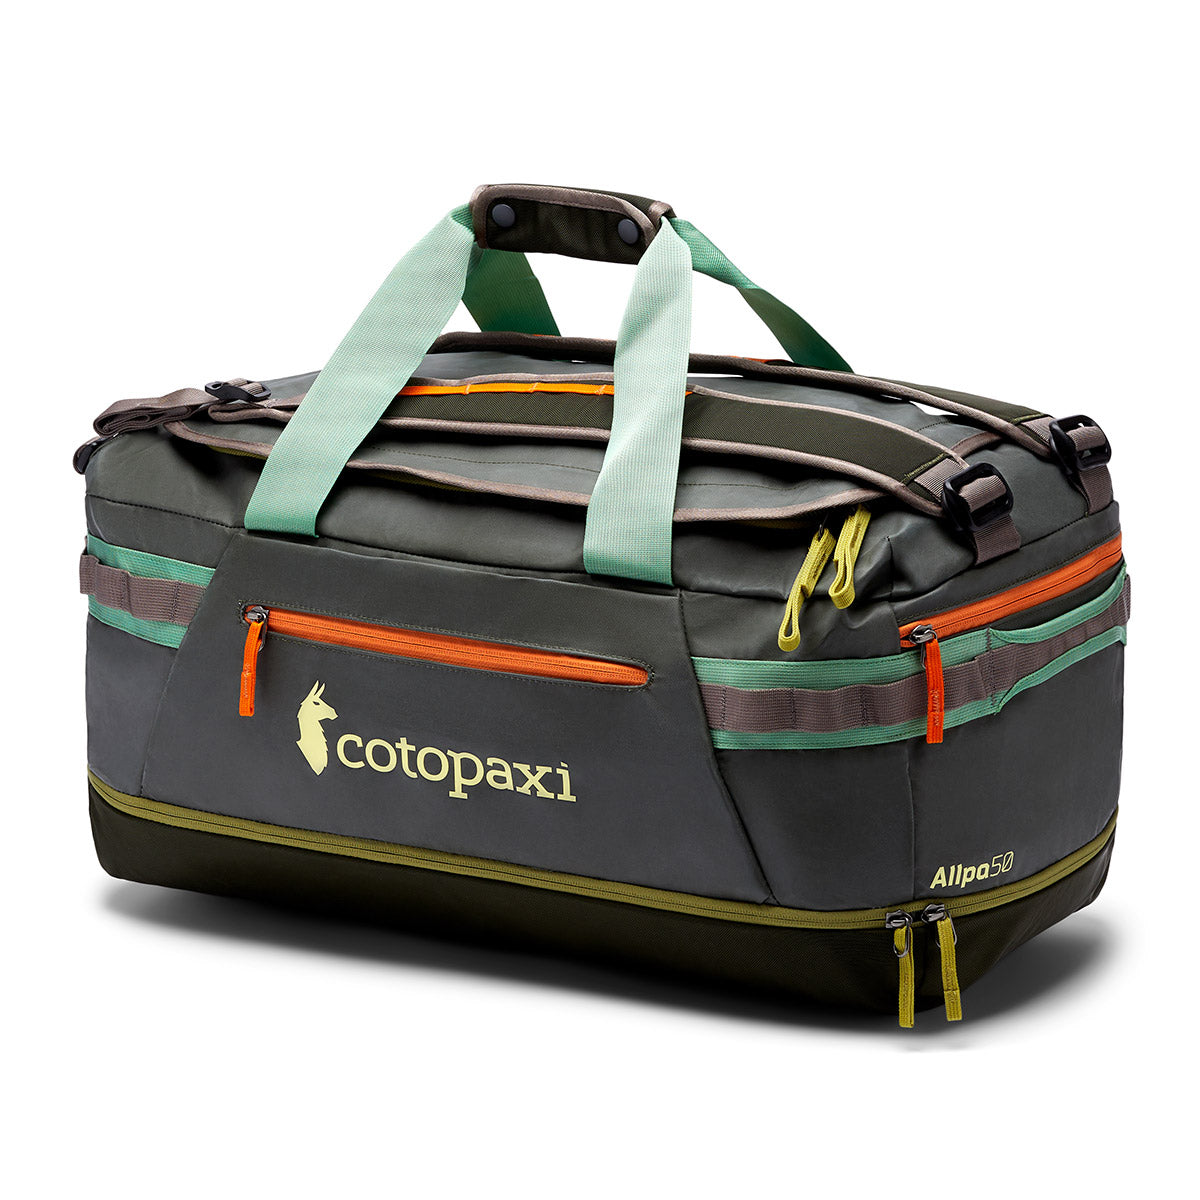 Cotopaxi Allpa 50L Duffel Bag アルパ 50リットル ダッフル バッグ